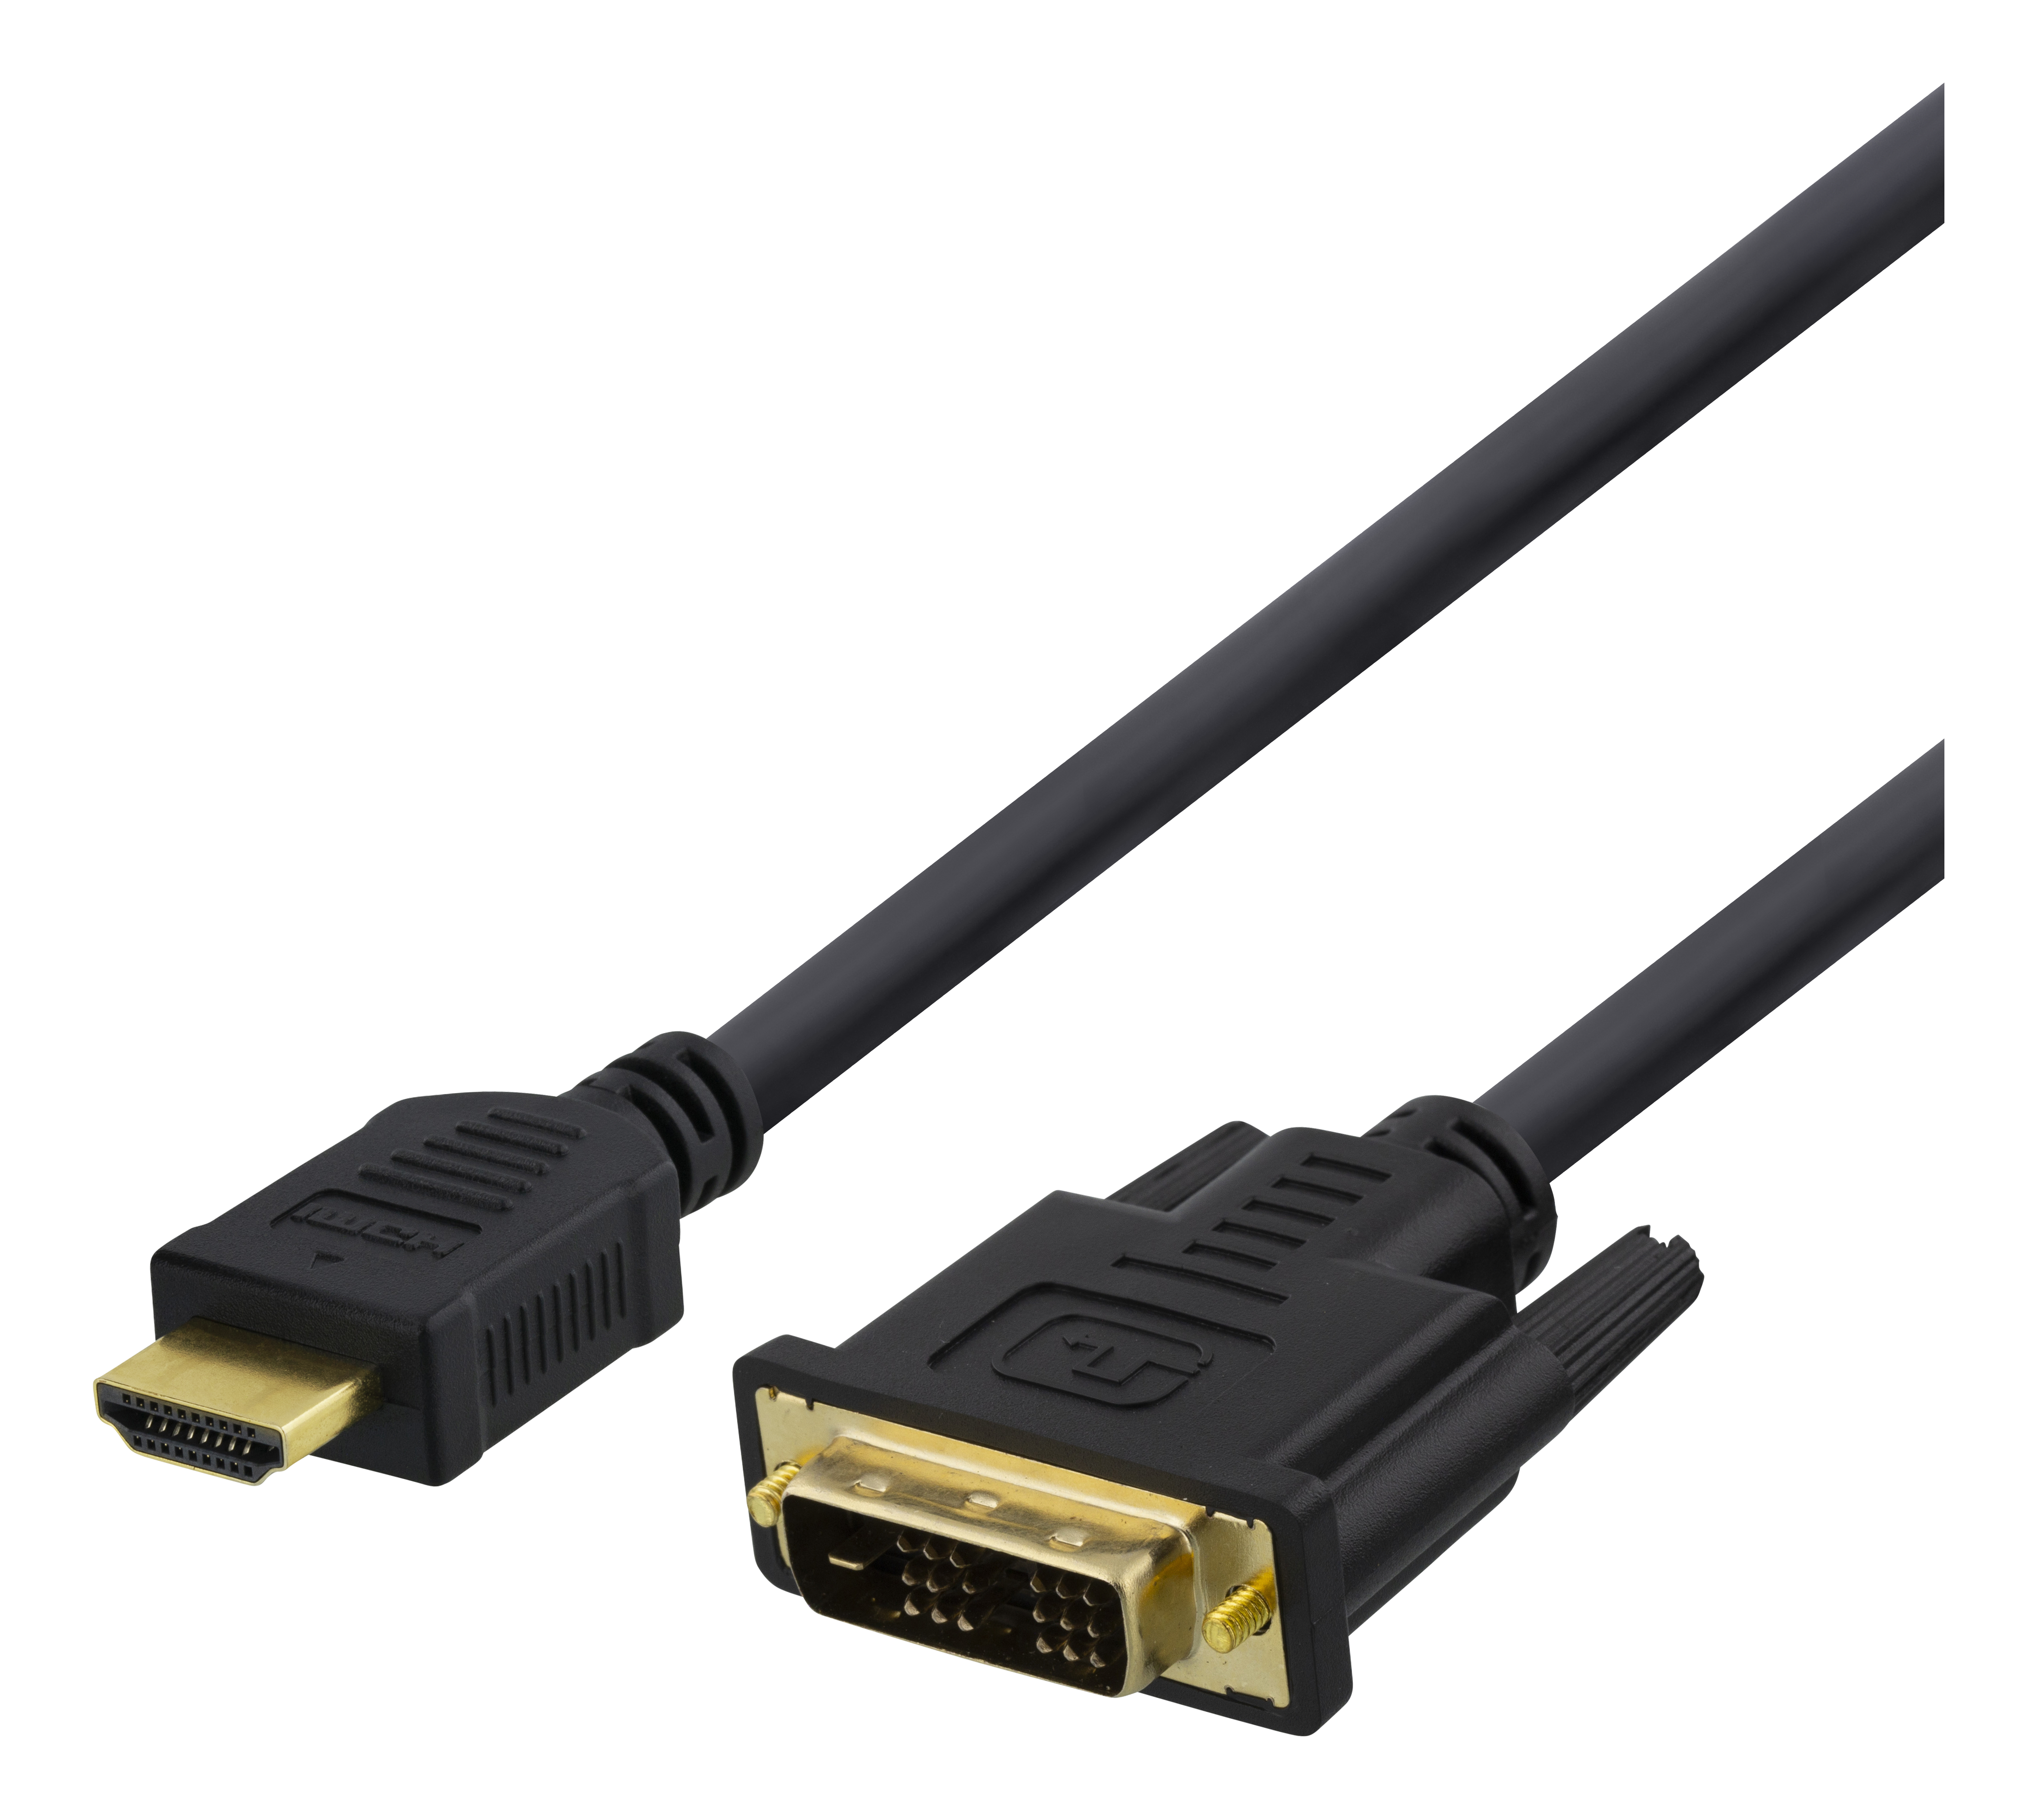 DELTACO HDMI līdz DVI kabelis, 7 m, Full HD, melns